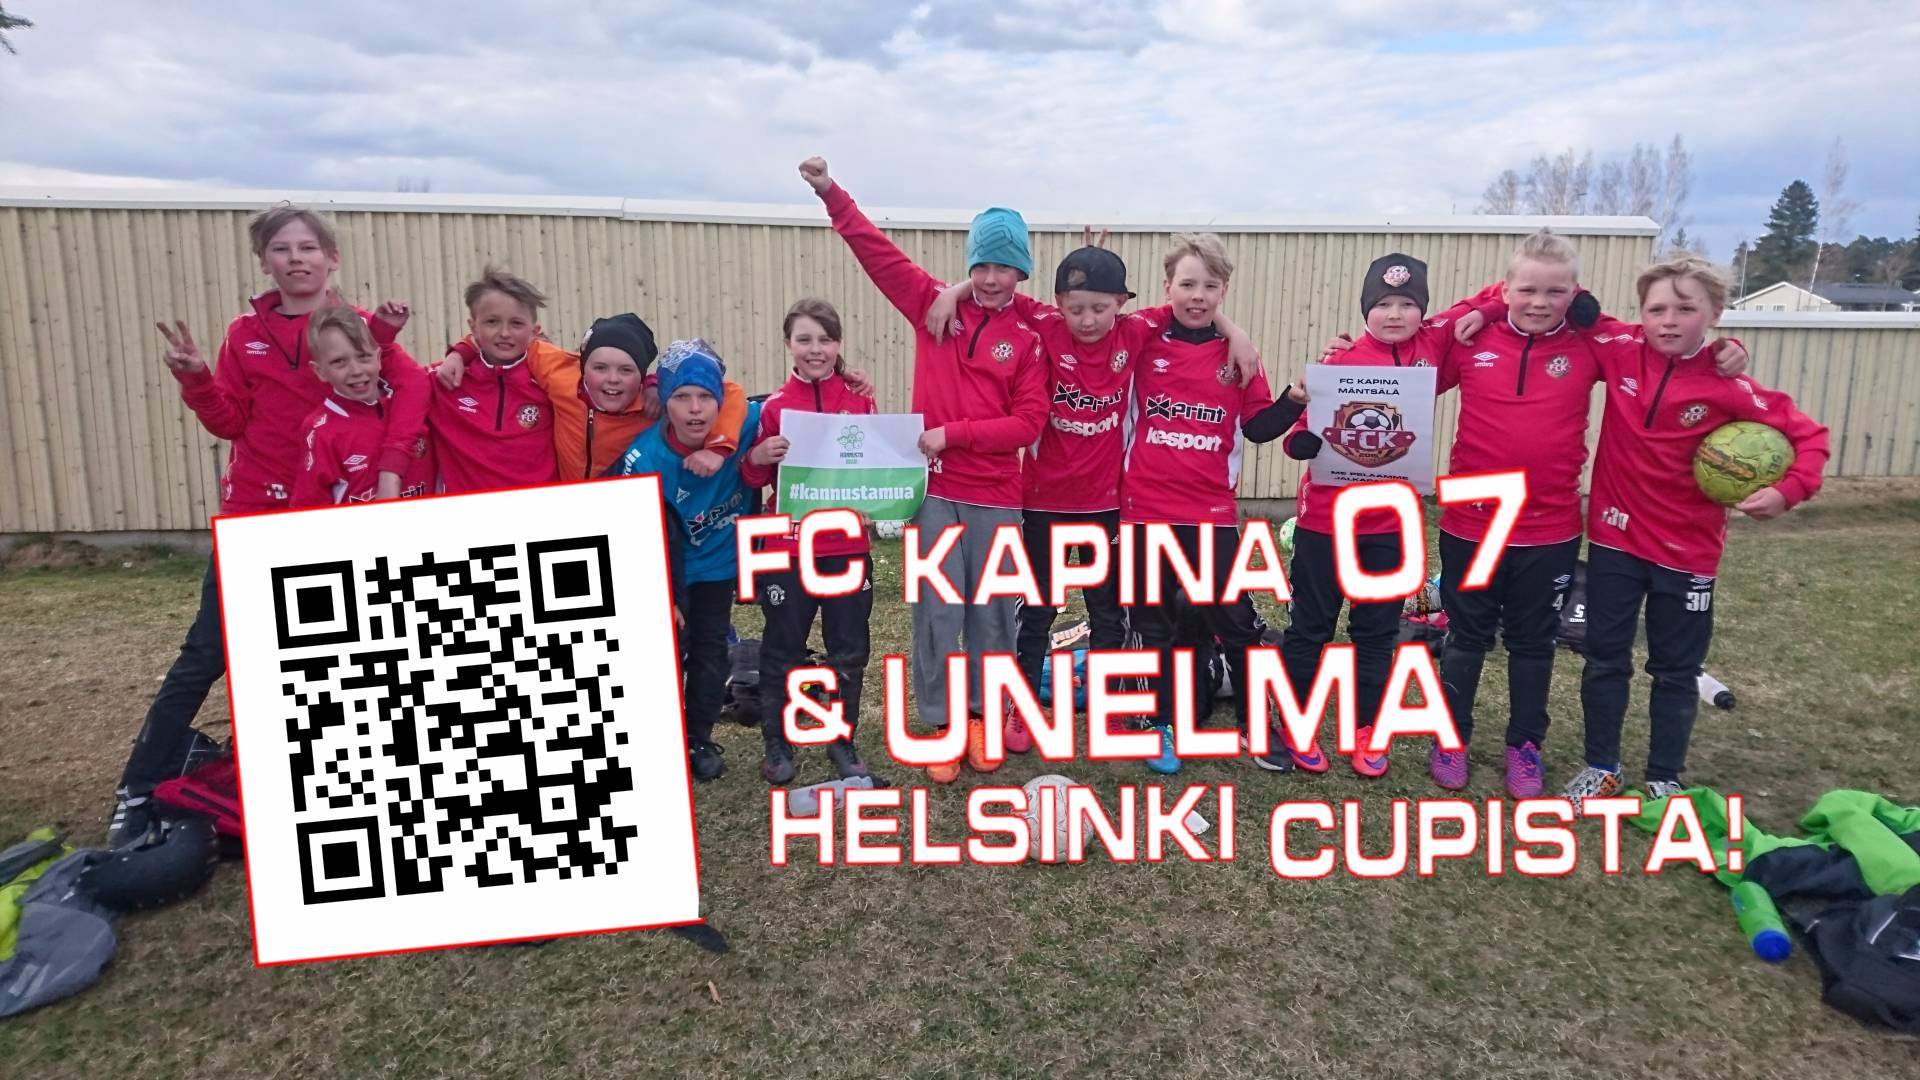 FC Kapina 07 ja unelma Helsinki Cupista!